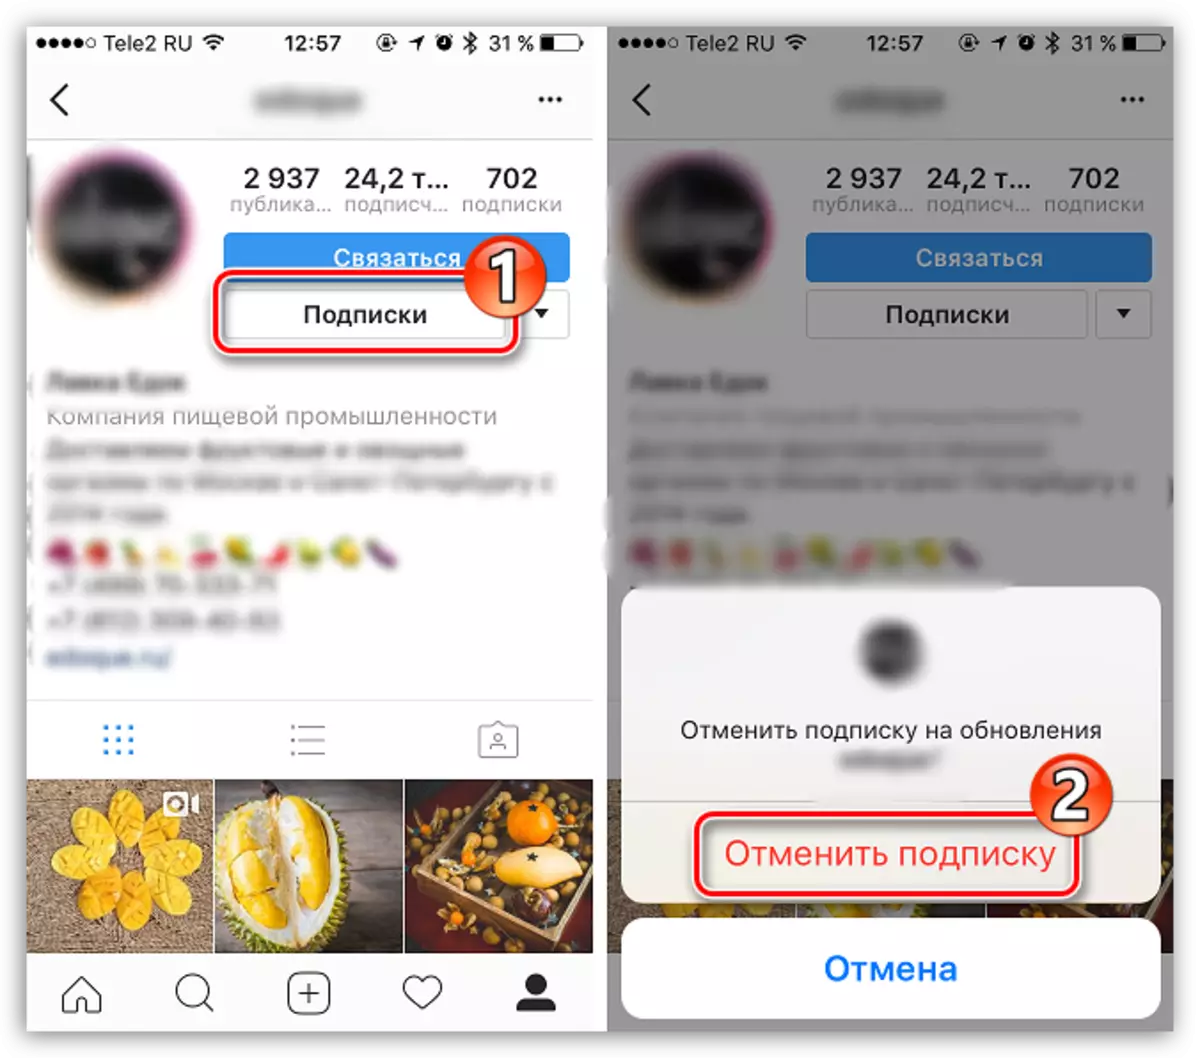 Appect melalui profil pengguna di Instagram